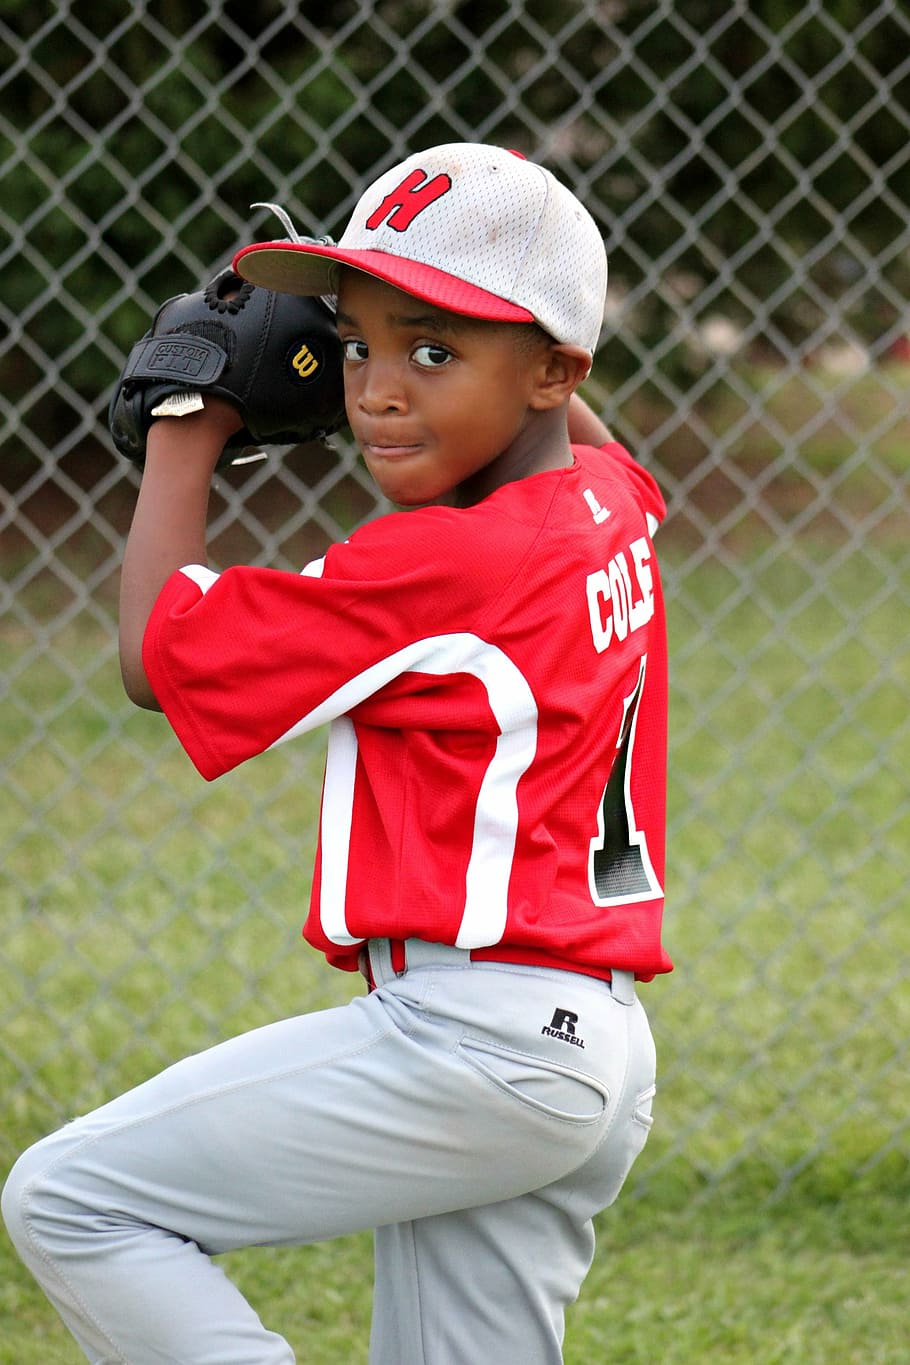 野球選手の子供, 身に着けている, 赤, 白, ジャージーシャツ, パンツの服装, 少年, 選手, 野球, 投手